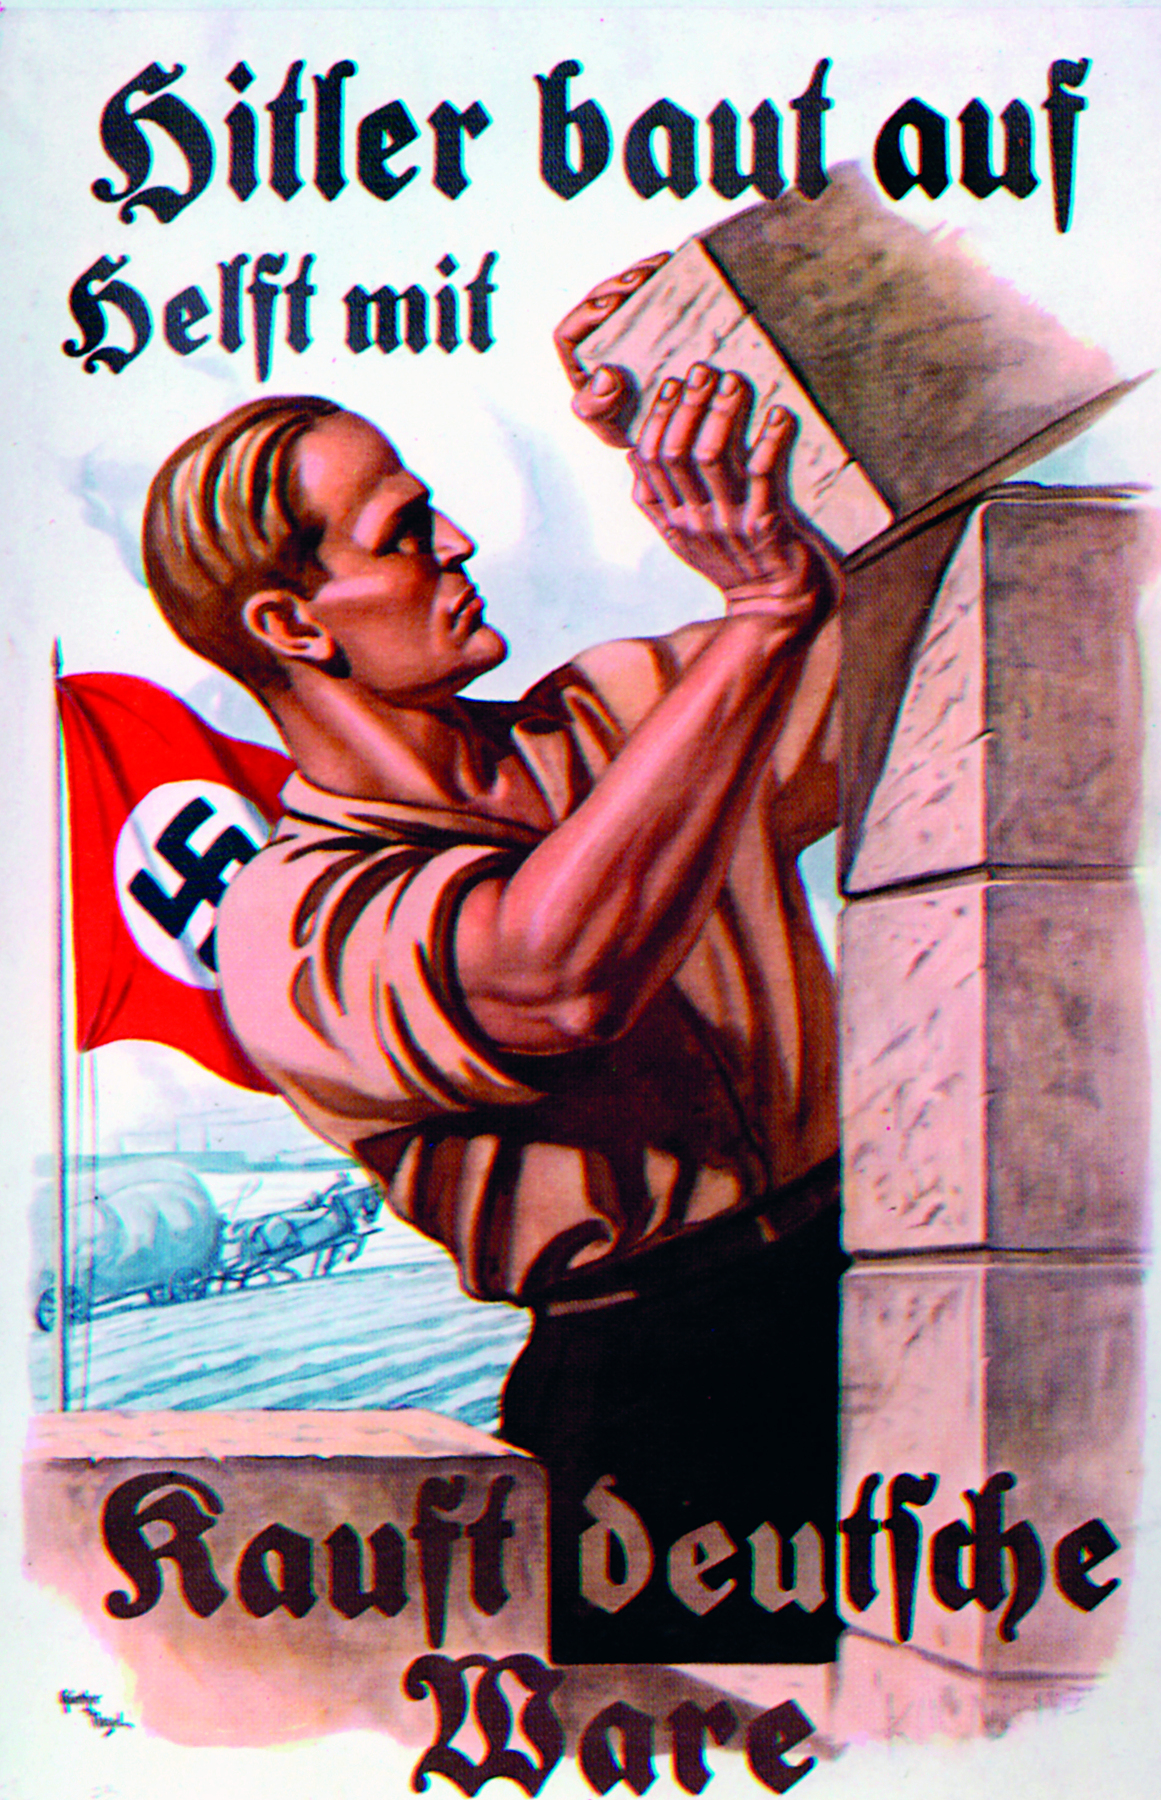 Cartaz. Ilustração de homem branco e loiro, de camisa clara com as mangas arregaçadas e calça escura, empilhando blocos. Ao fundo, bandeira vermelha com a suástica. Ao redor, dizeres em alemão.